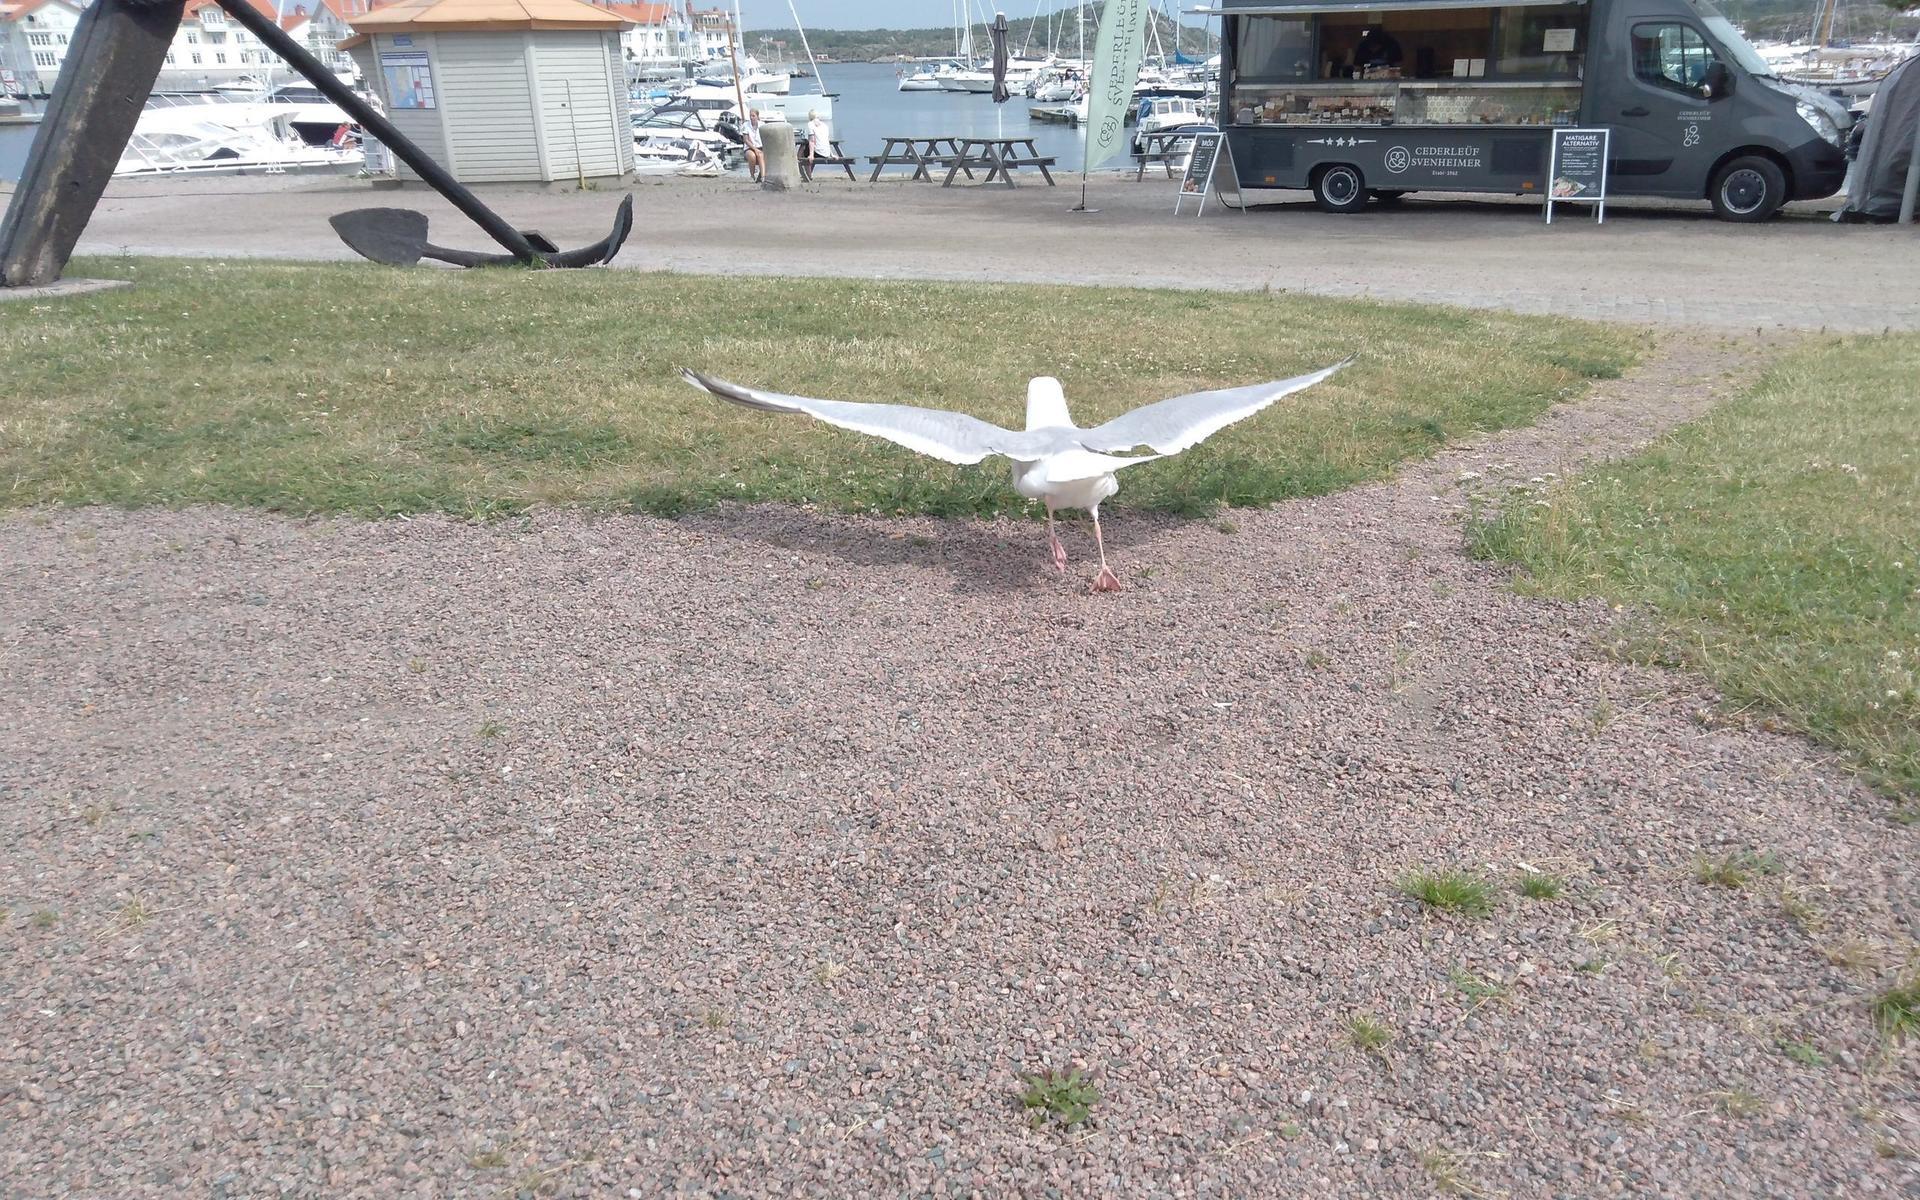 Se upp på ön. En av Marstrandsön vita örnar på väg att lyfta, fulltankad... Bild: Svenåke Svensson turist från Kungälv på Marstrandsön 2 juli.